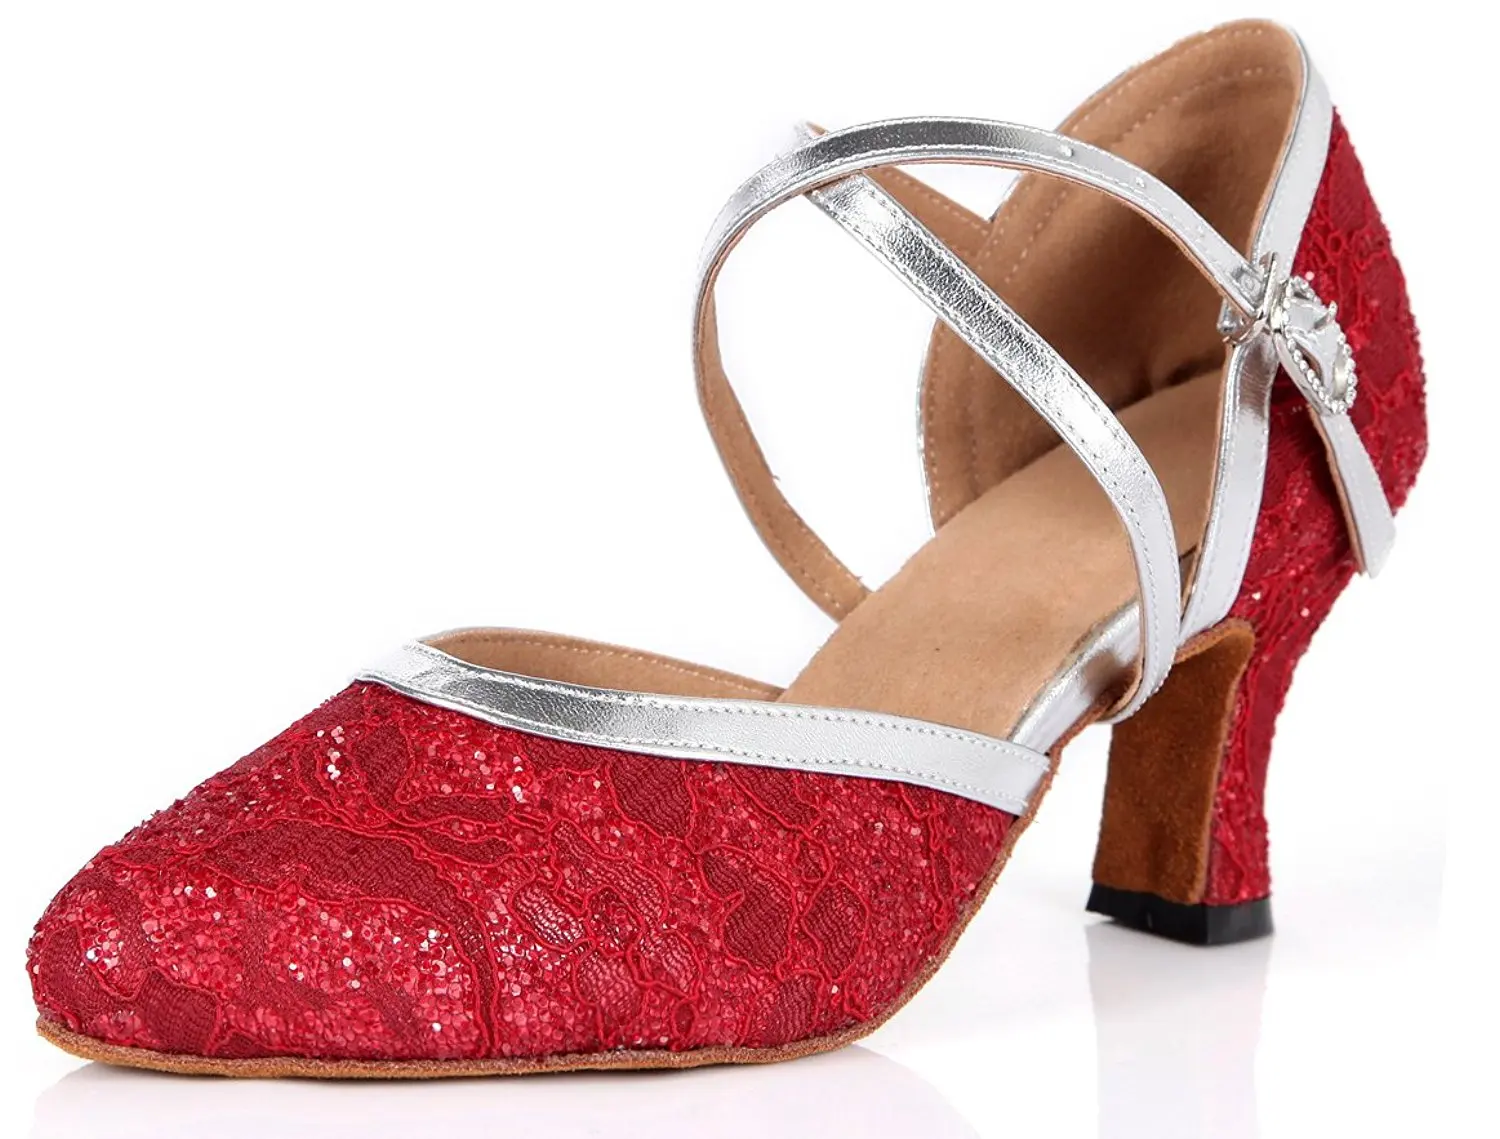 Buy Honeystore Womens Soft Ground Mary Jane Glitter Dance Shoes in ...